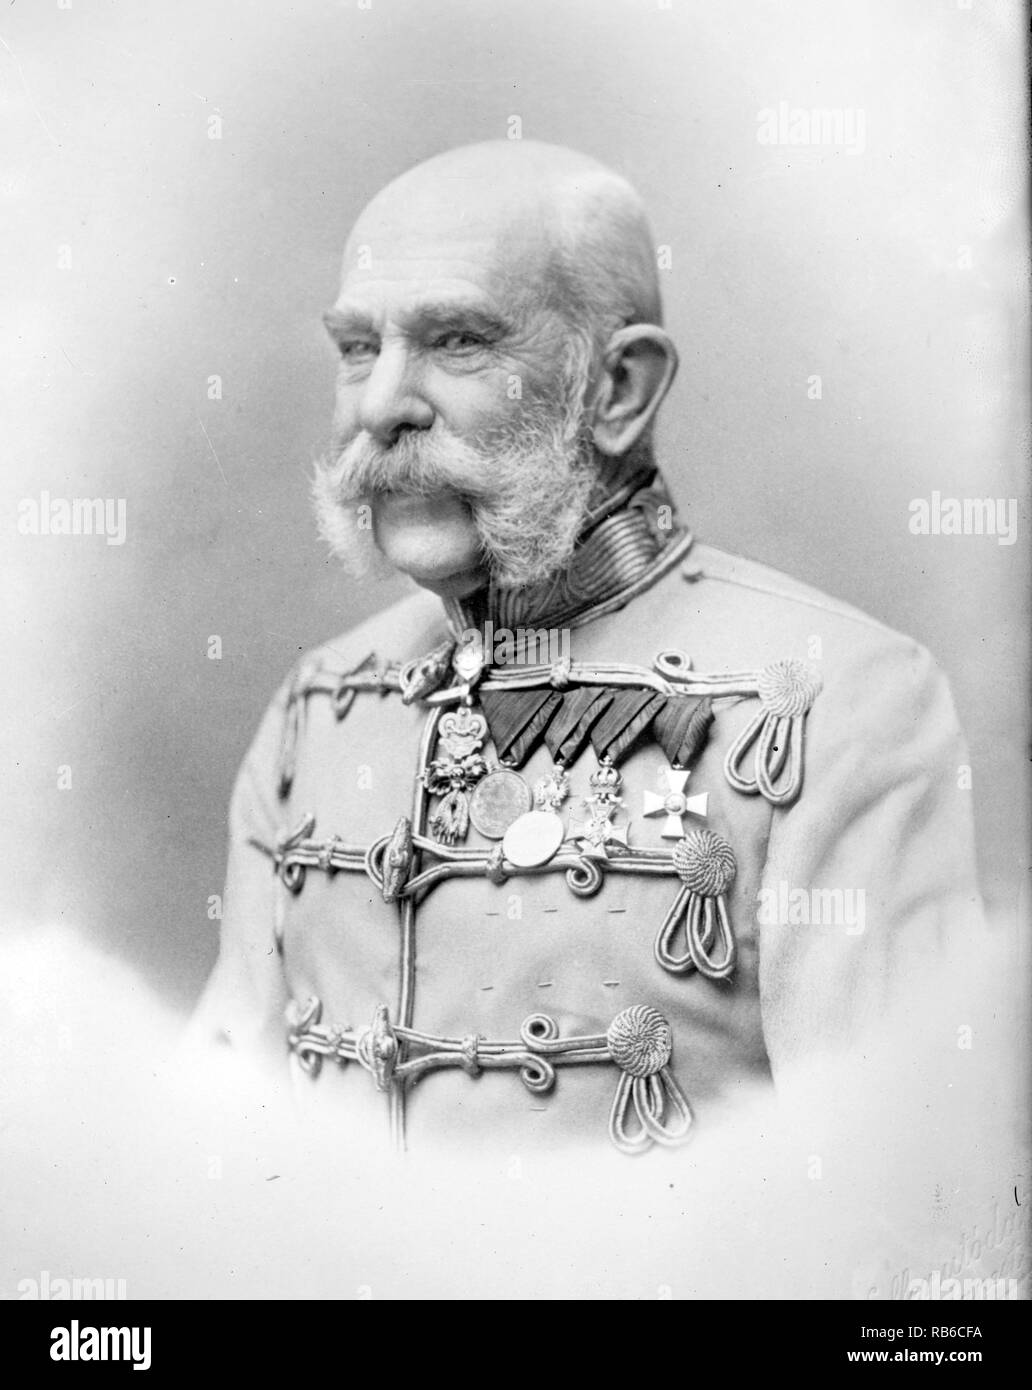 François-Joseph I d'Autriche, François-Joseph, François-Joseph I (1830 - 1916) Empereur d'Autriche, roi de Hongrie, et des monarques de nombreux autres états de l'Empire austro-hongrois, de 1848 à sa mort Banque D'Images